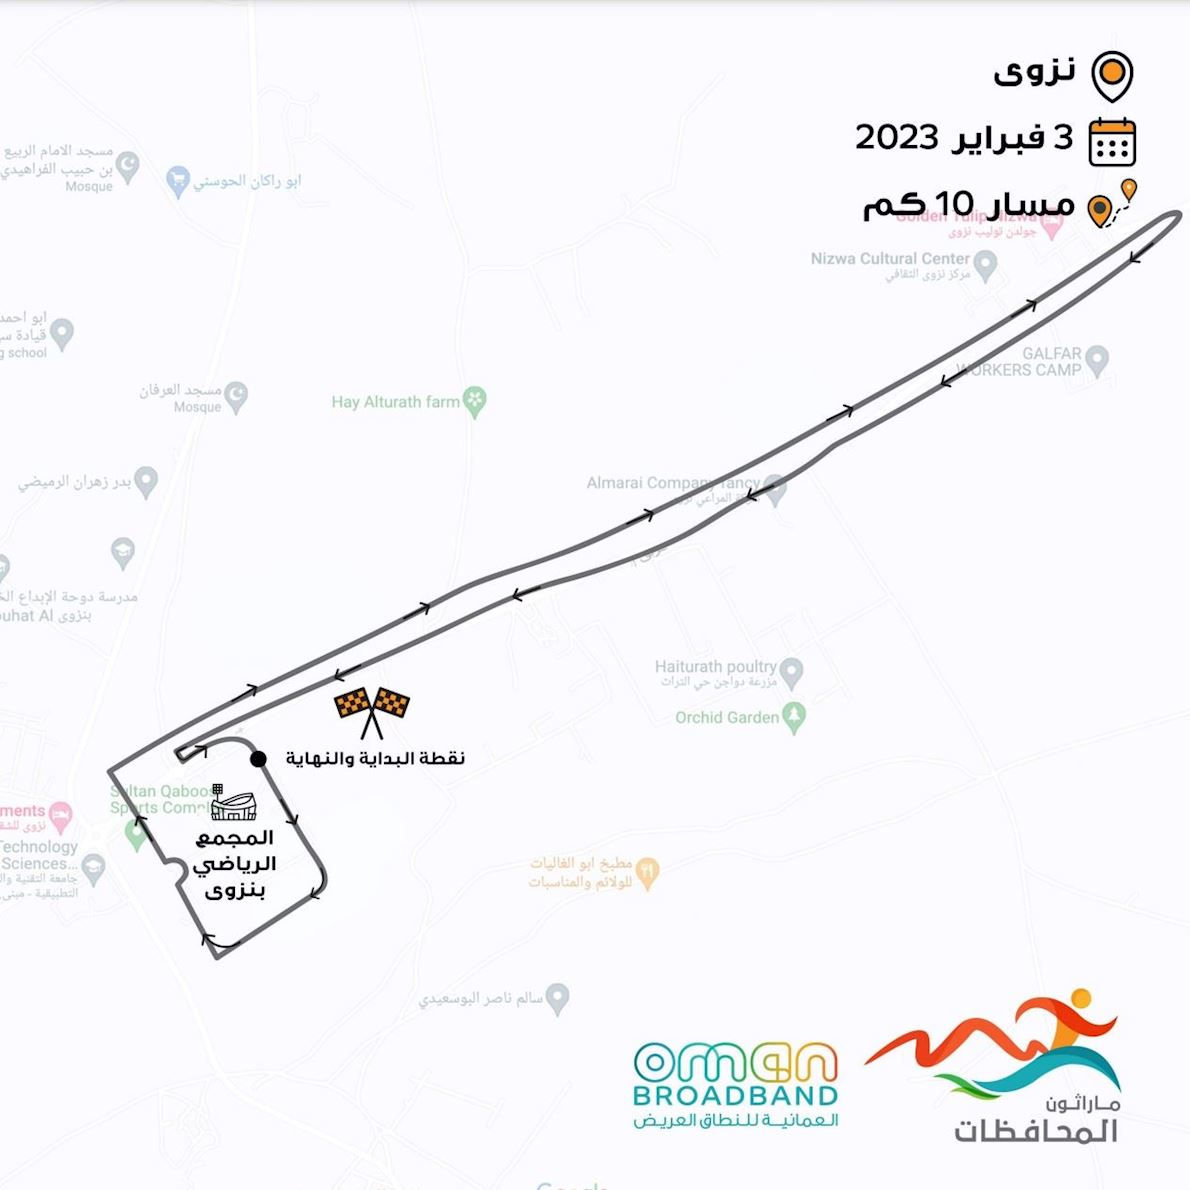 Oman Broadband Governorates Marathon MAPA DEL RECORRIDO DE